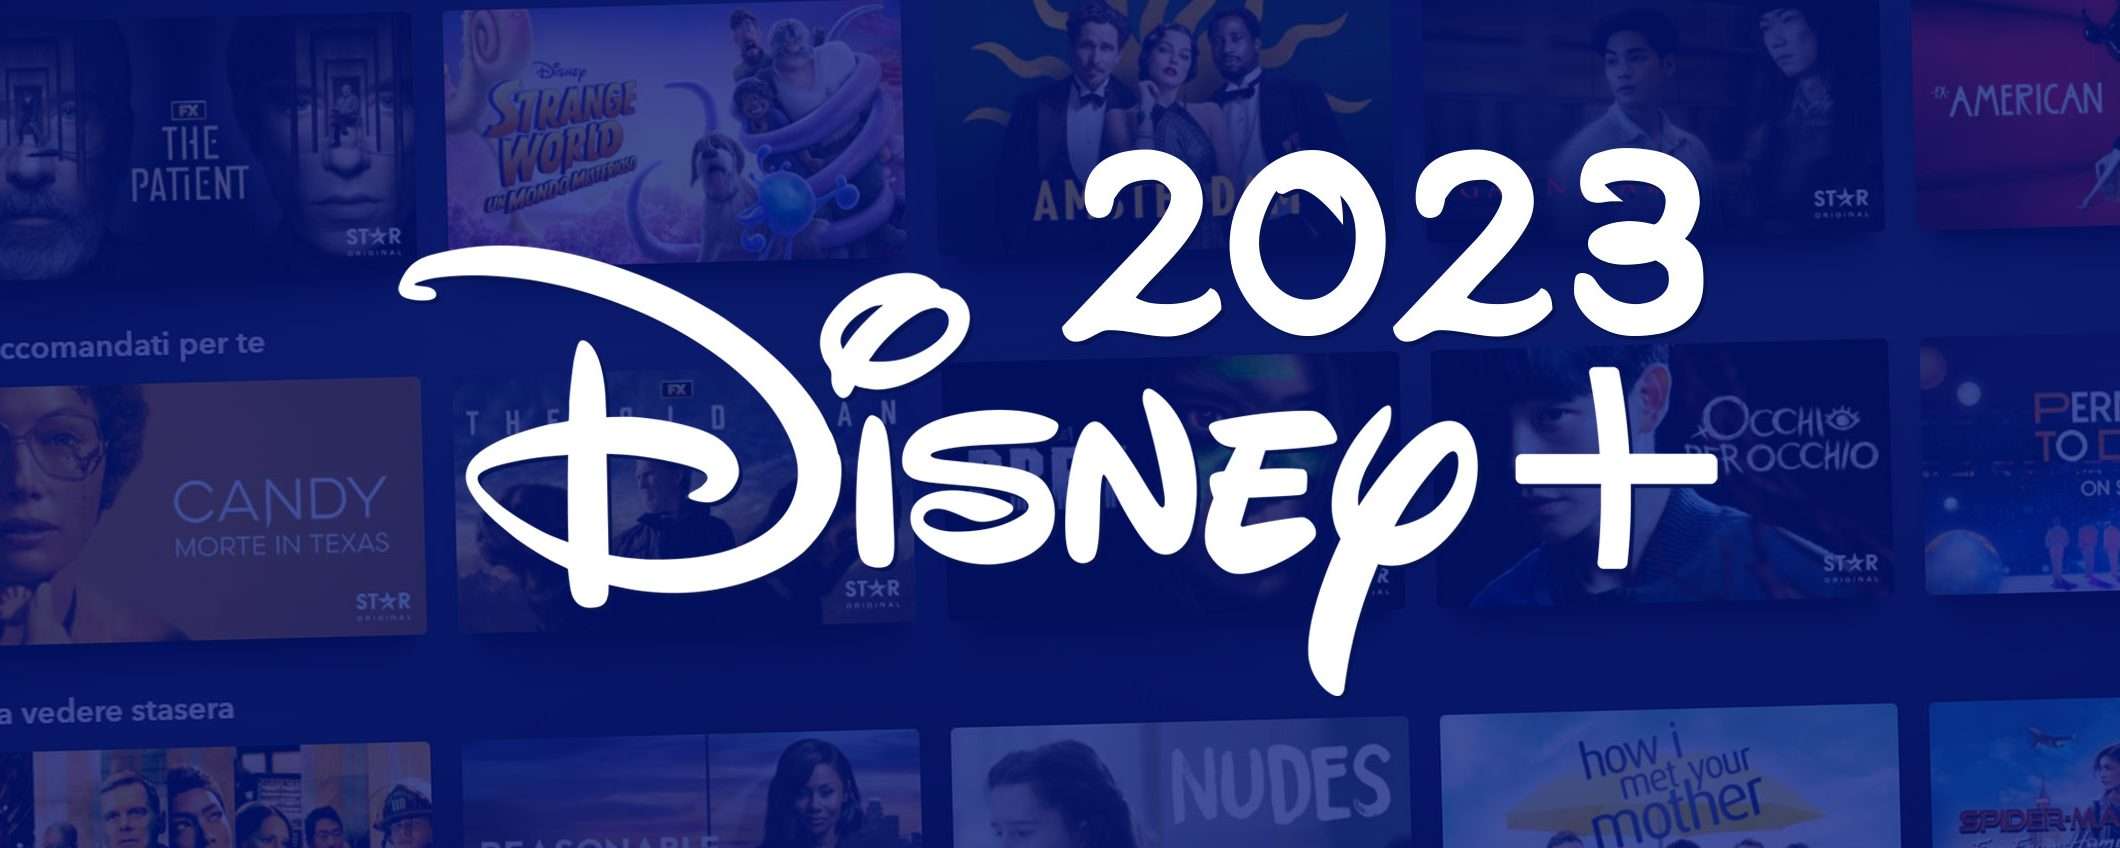 Disney+: le migliori novità in arrivo nel 2023